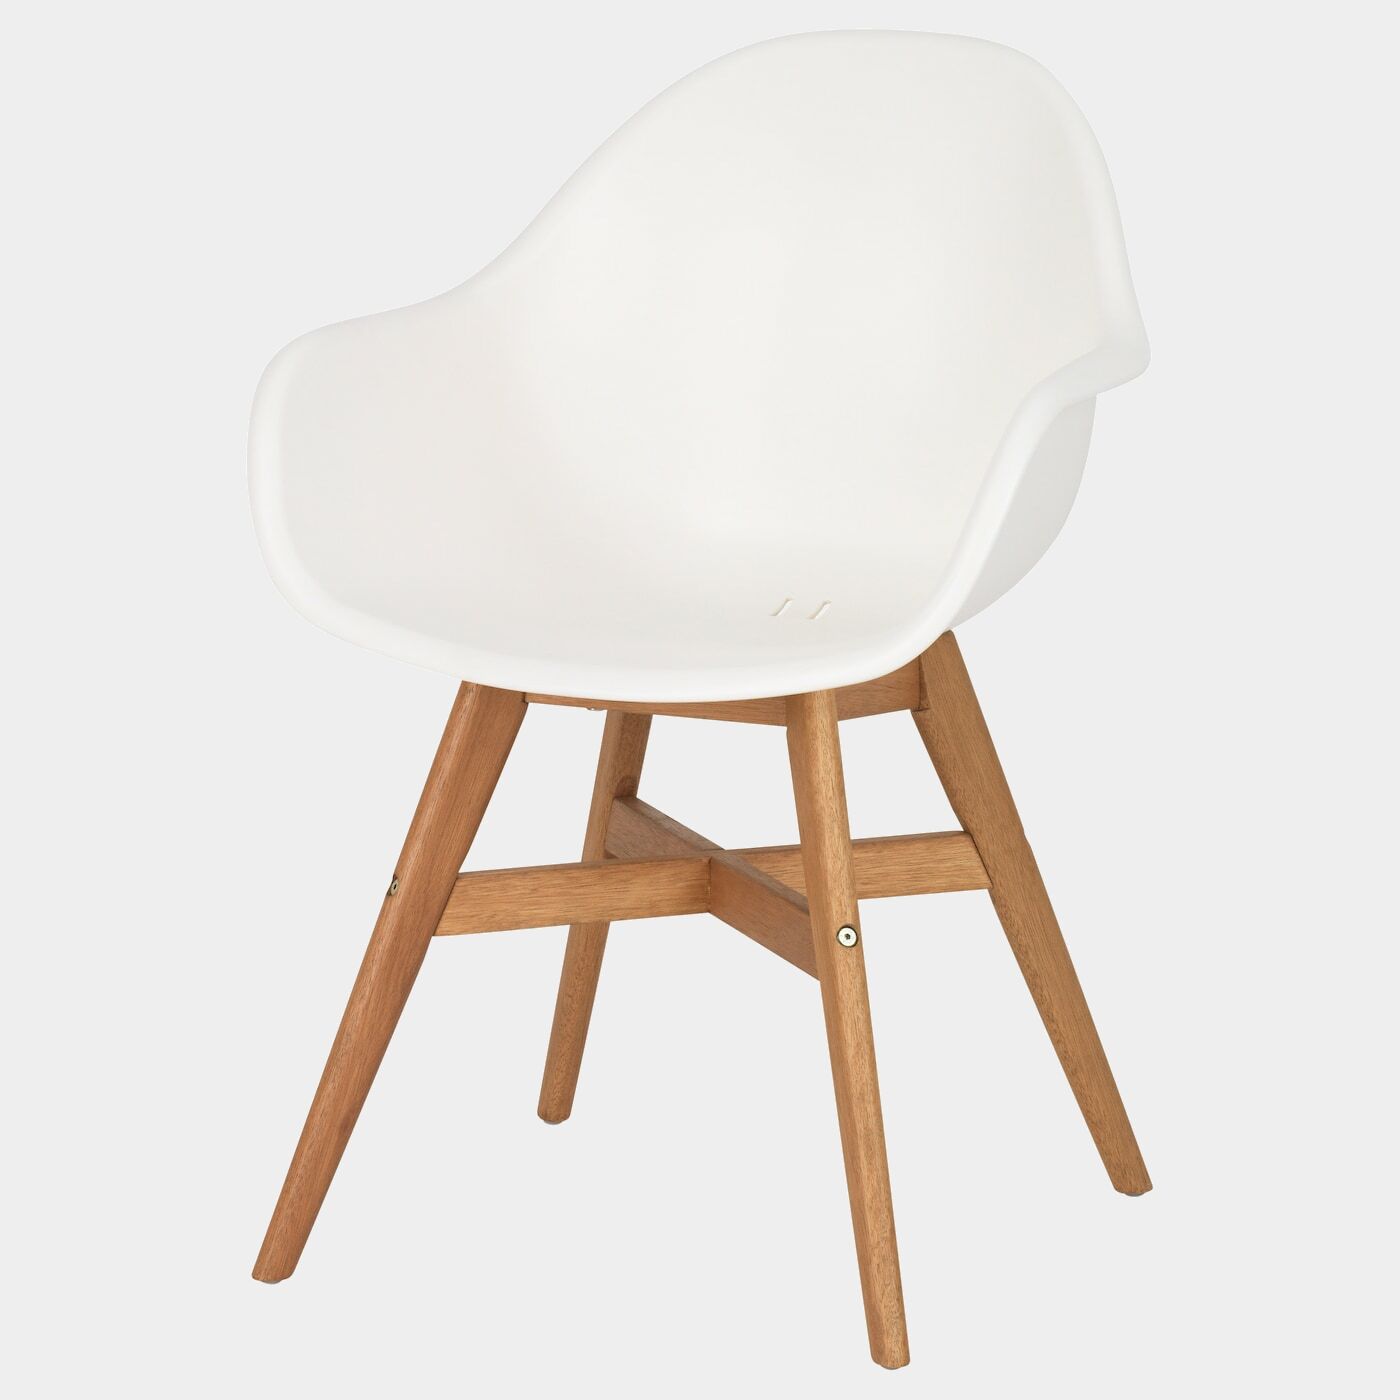 FANBYN Armlehnstuhl  - Esszimmerstühle - Möbel Ideen für dein Zuhause von Home Trends. Möbel Trends von Social Media Influencer für dein Skandi Zuhause.